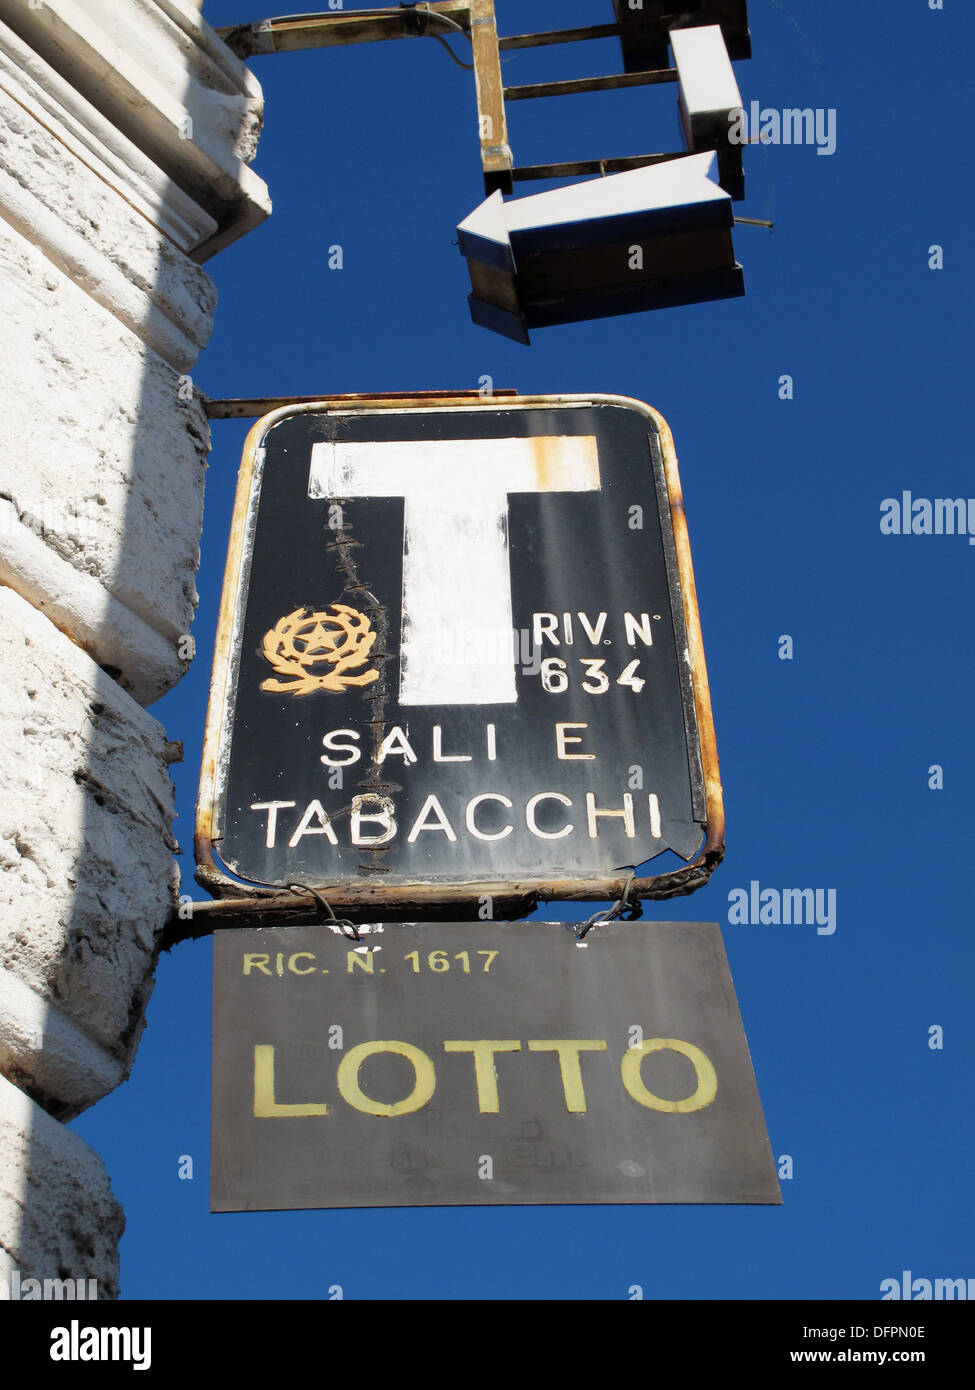 Sali e tabacchi ´tabaccheria´ shop sign in Rome, Italy Stock Photo